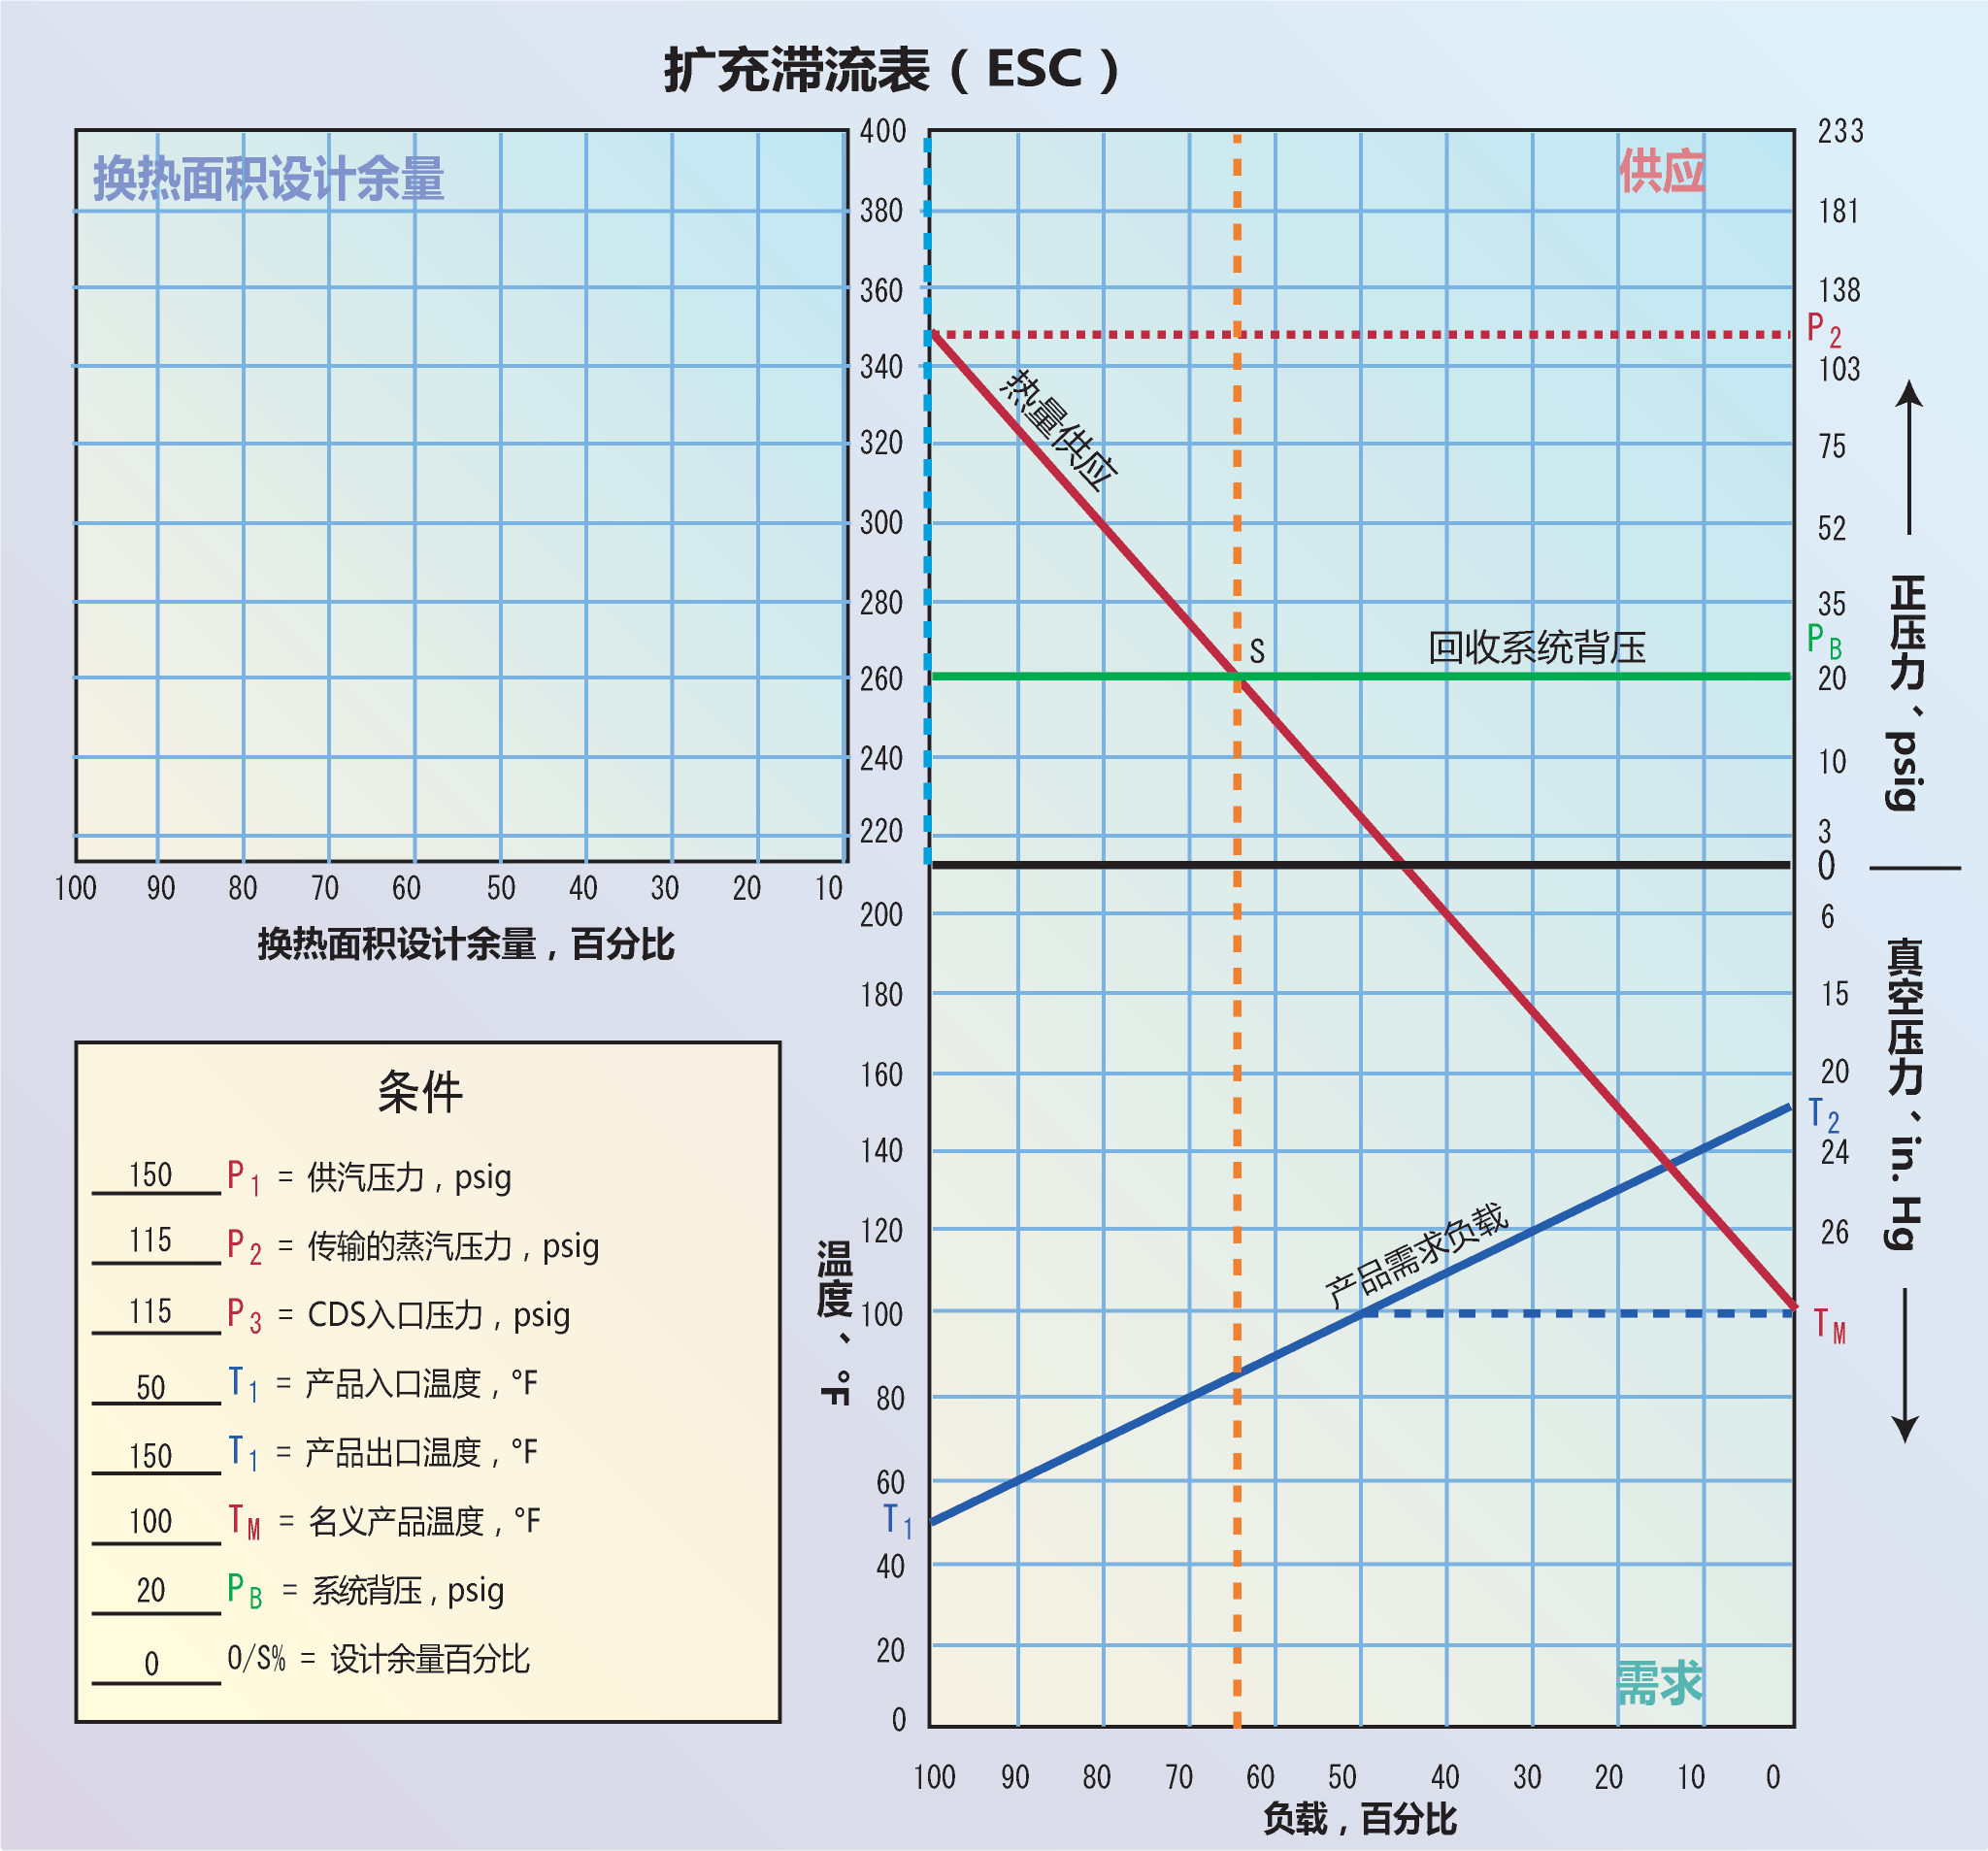 <strong>图3</strong> 扩充滞流表（ESC）是在标准滞流表的左上方额外增加一个等比例象限，标注设计余量百分比。新的象限起始于背压线PB，如图所示；换热面积满足100%加热需求时，设计余量为0，图中供应象限区左侧垂直轴线的蓝色虚线表示。